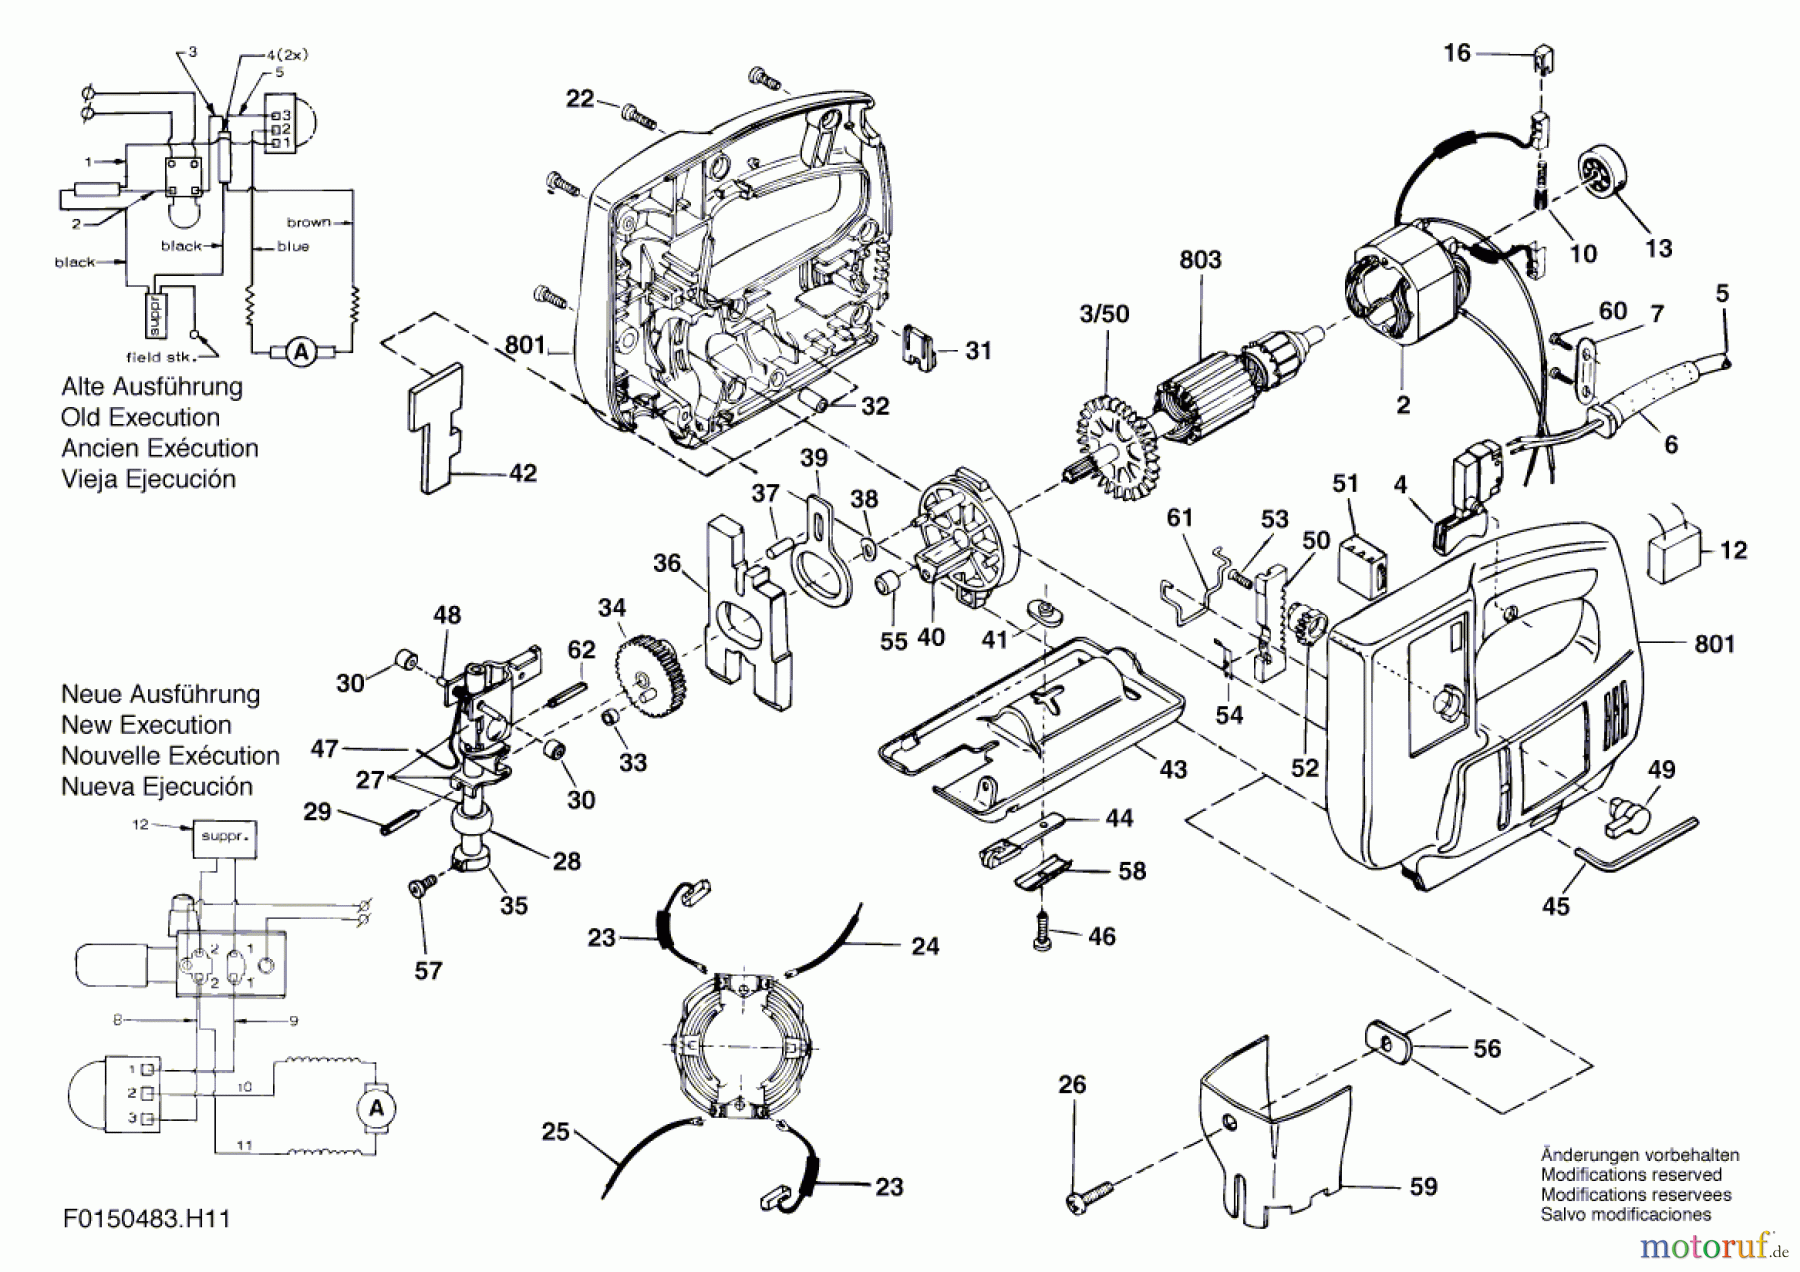  Bosch Werkzeug Stichsäge 483H1 Seite 1